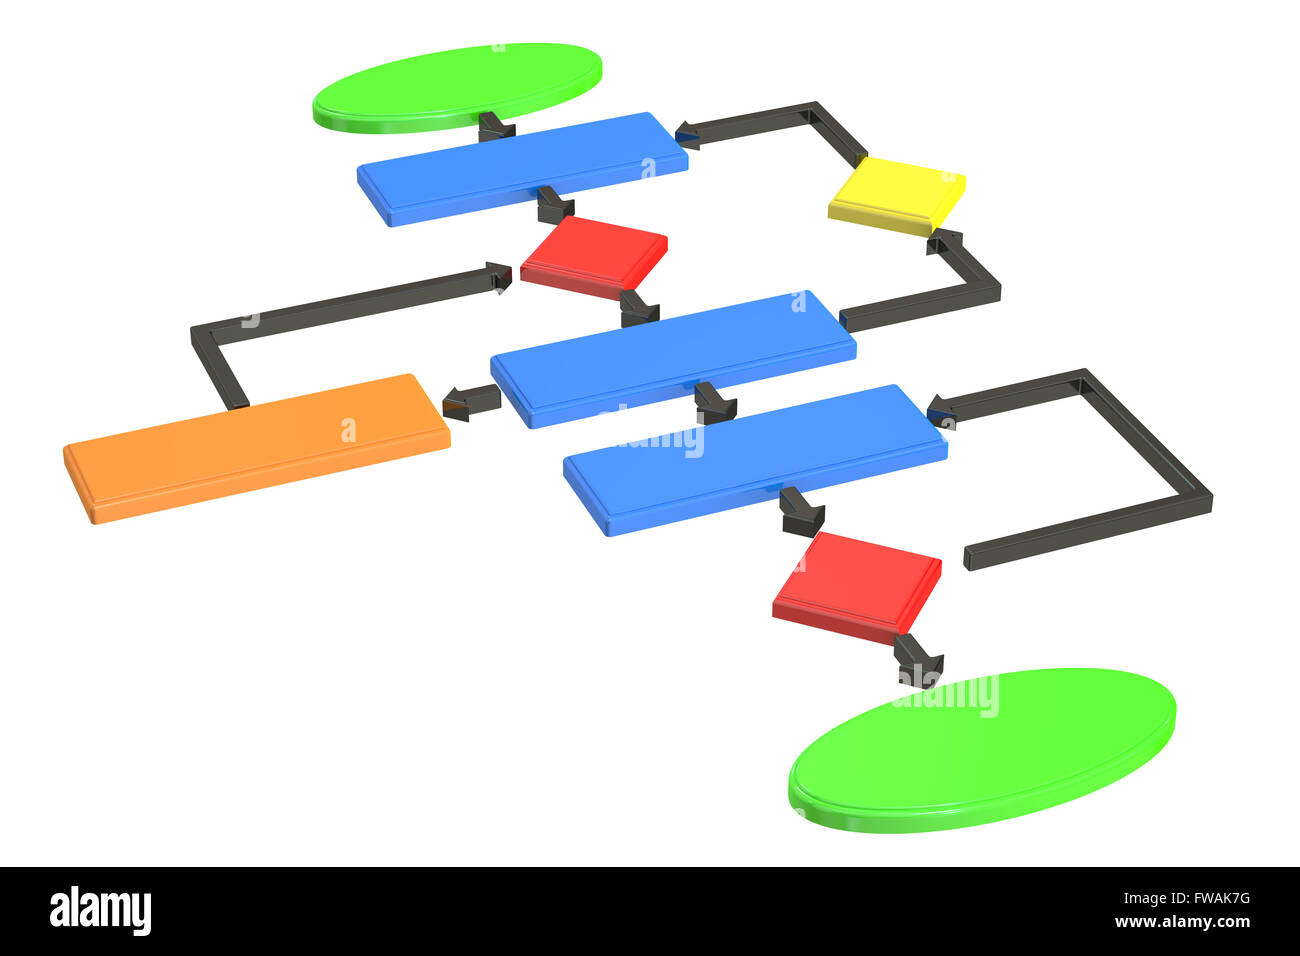 Algorithmus, Flussdiagramm. 3D-Rendering isoliert auf weißem Hintergrund Stockfoto